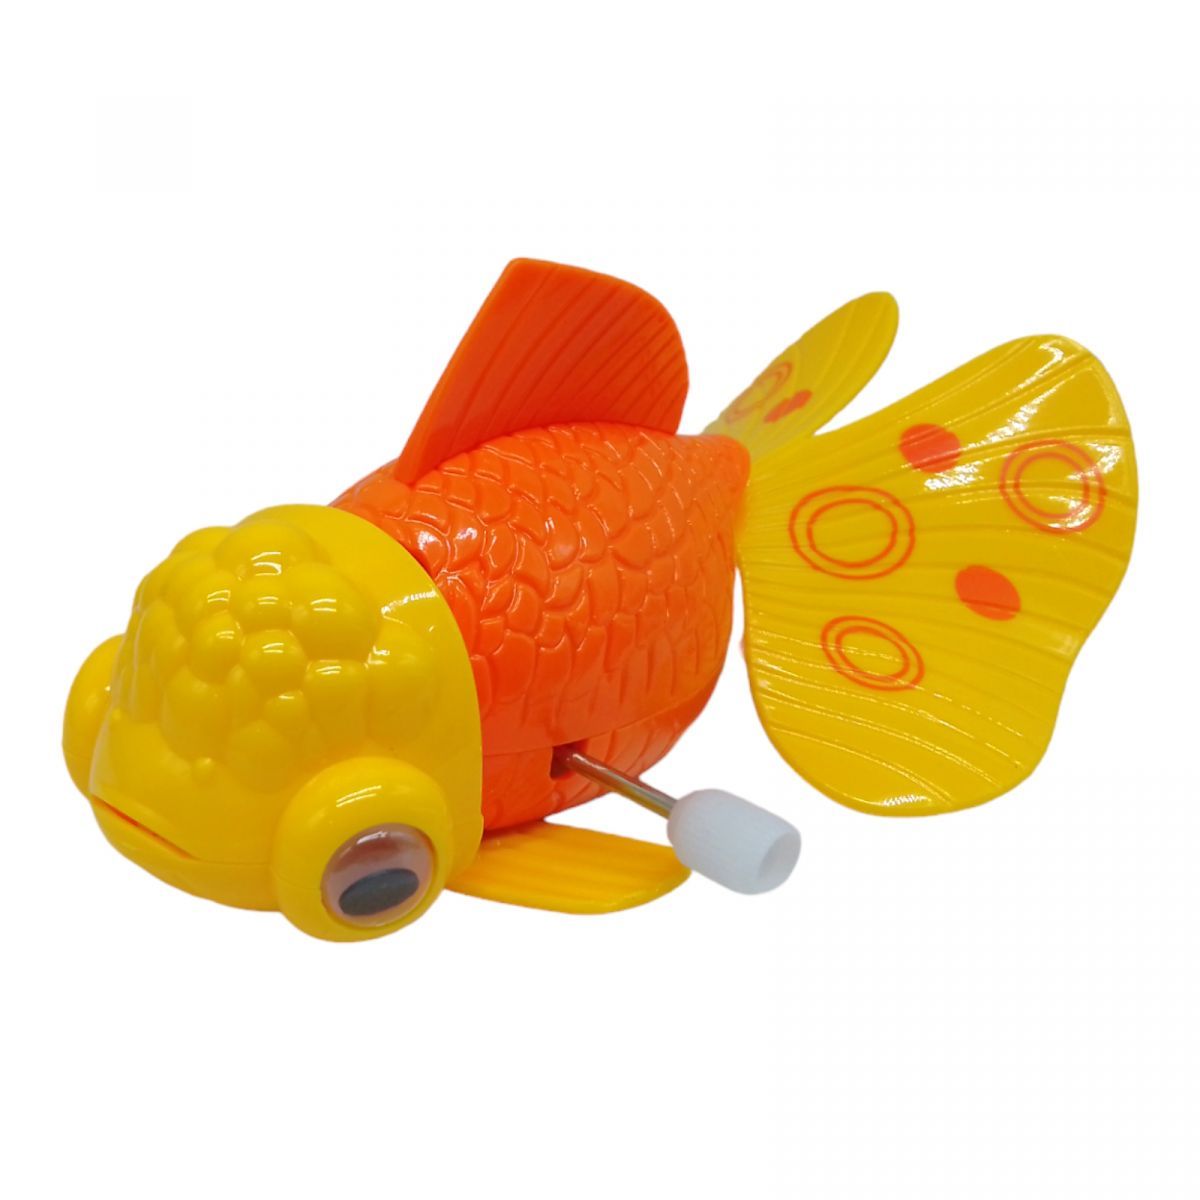 Уцінка.  Заводна іграшка "Золота рибка" (помаранчева) - відсутній верхній плавник